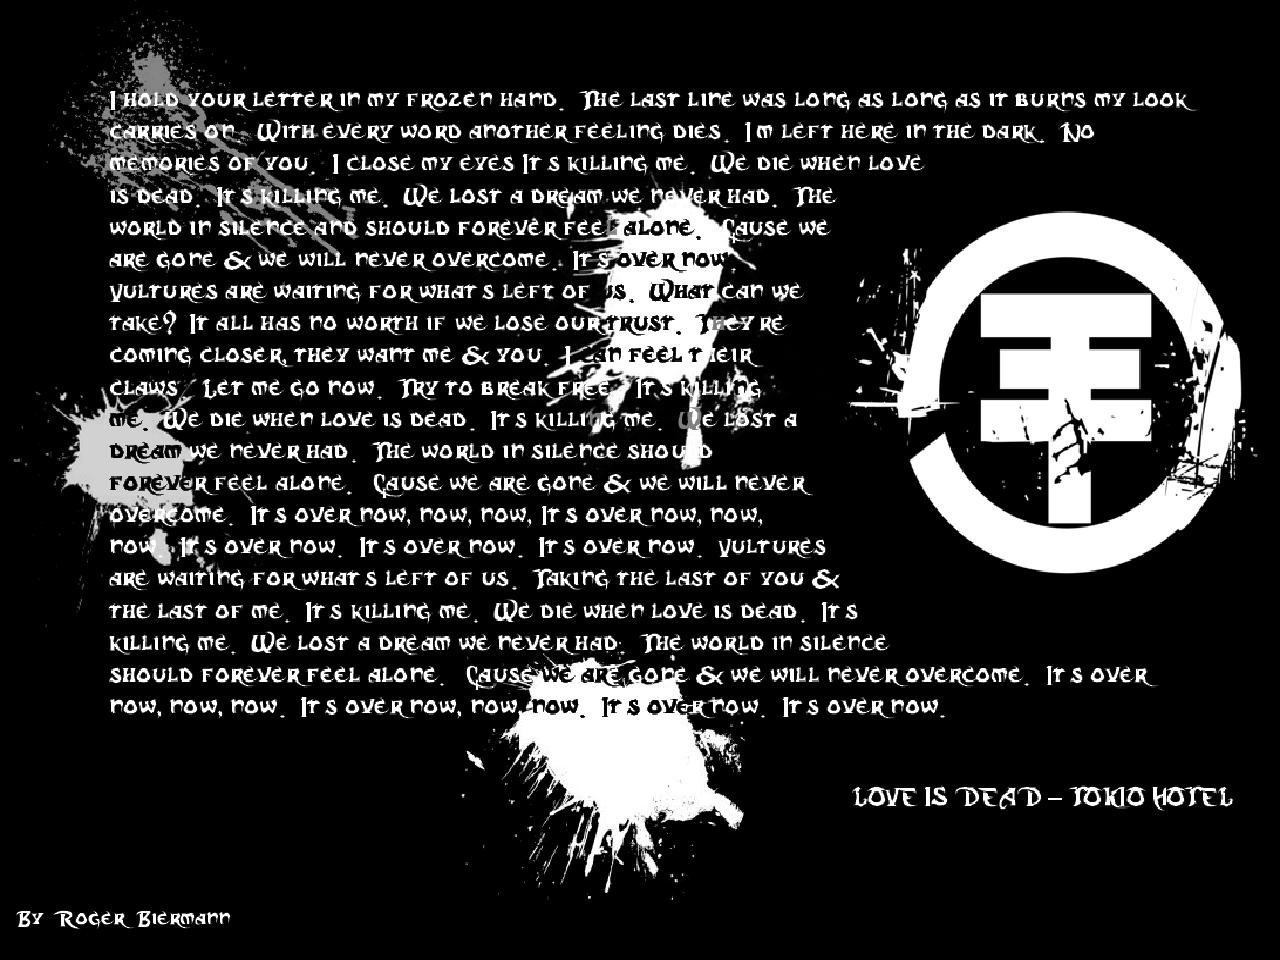 Tokio Hotel   Lyric wallpaper by Vanskof on